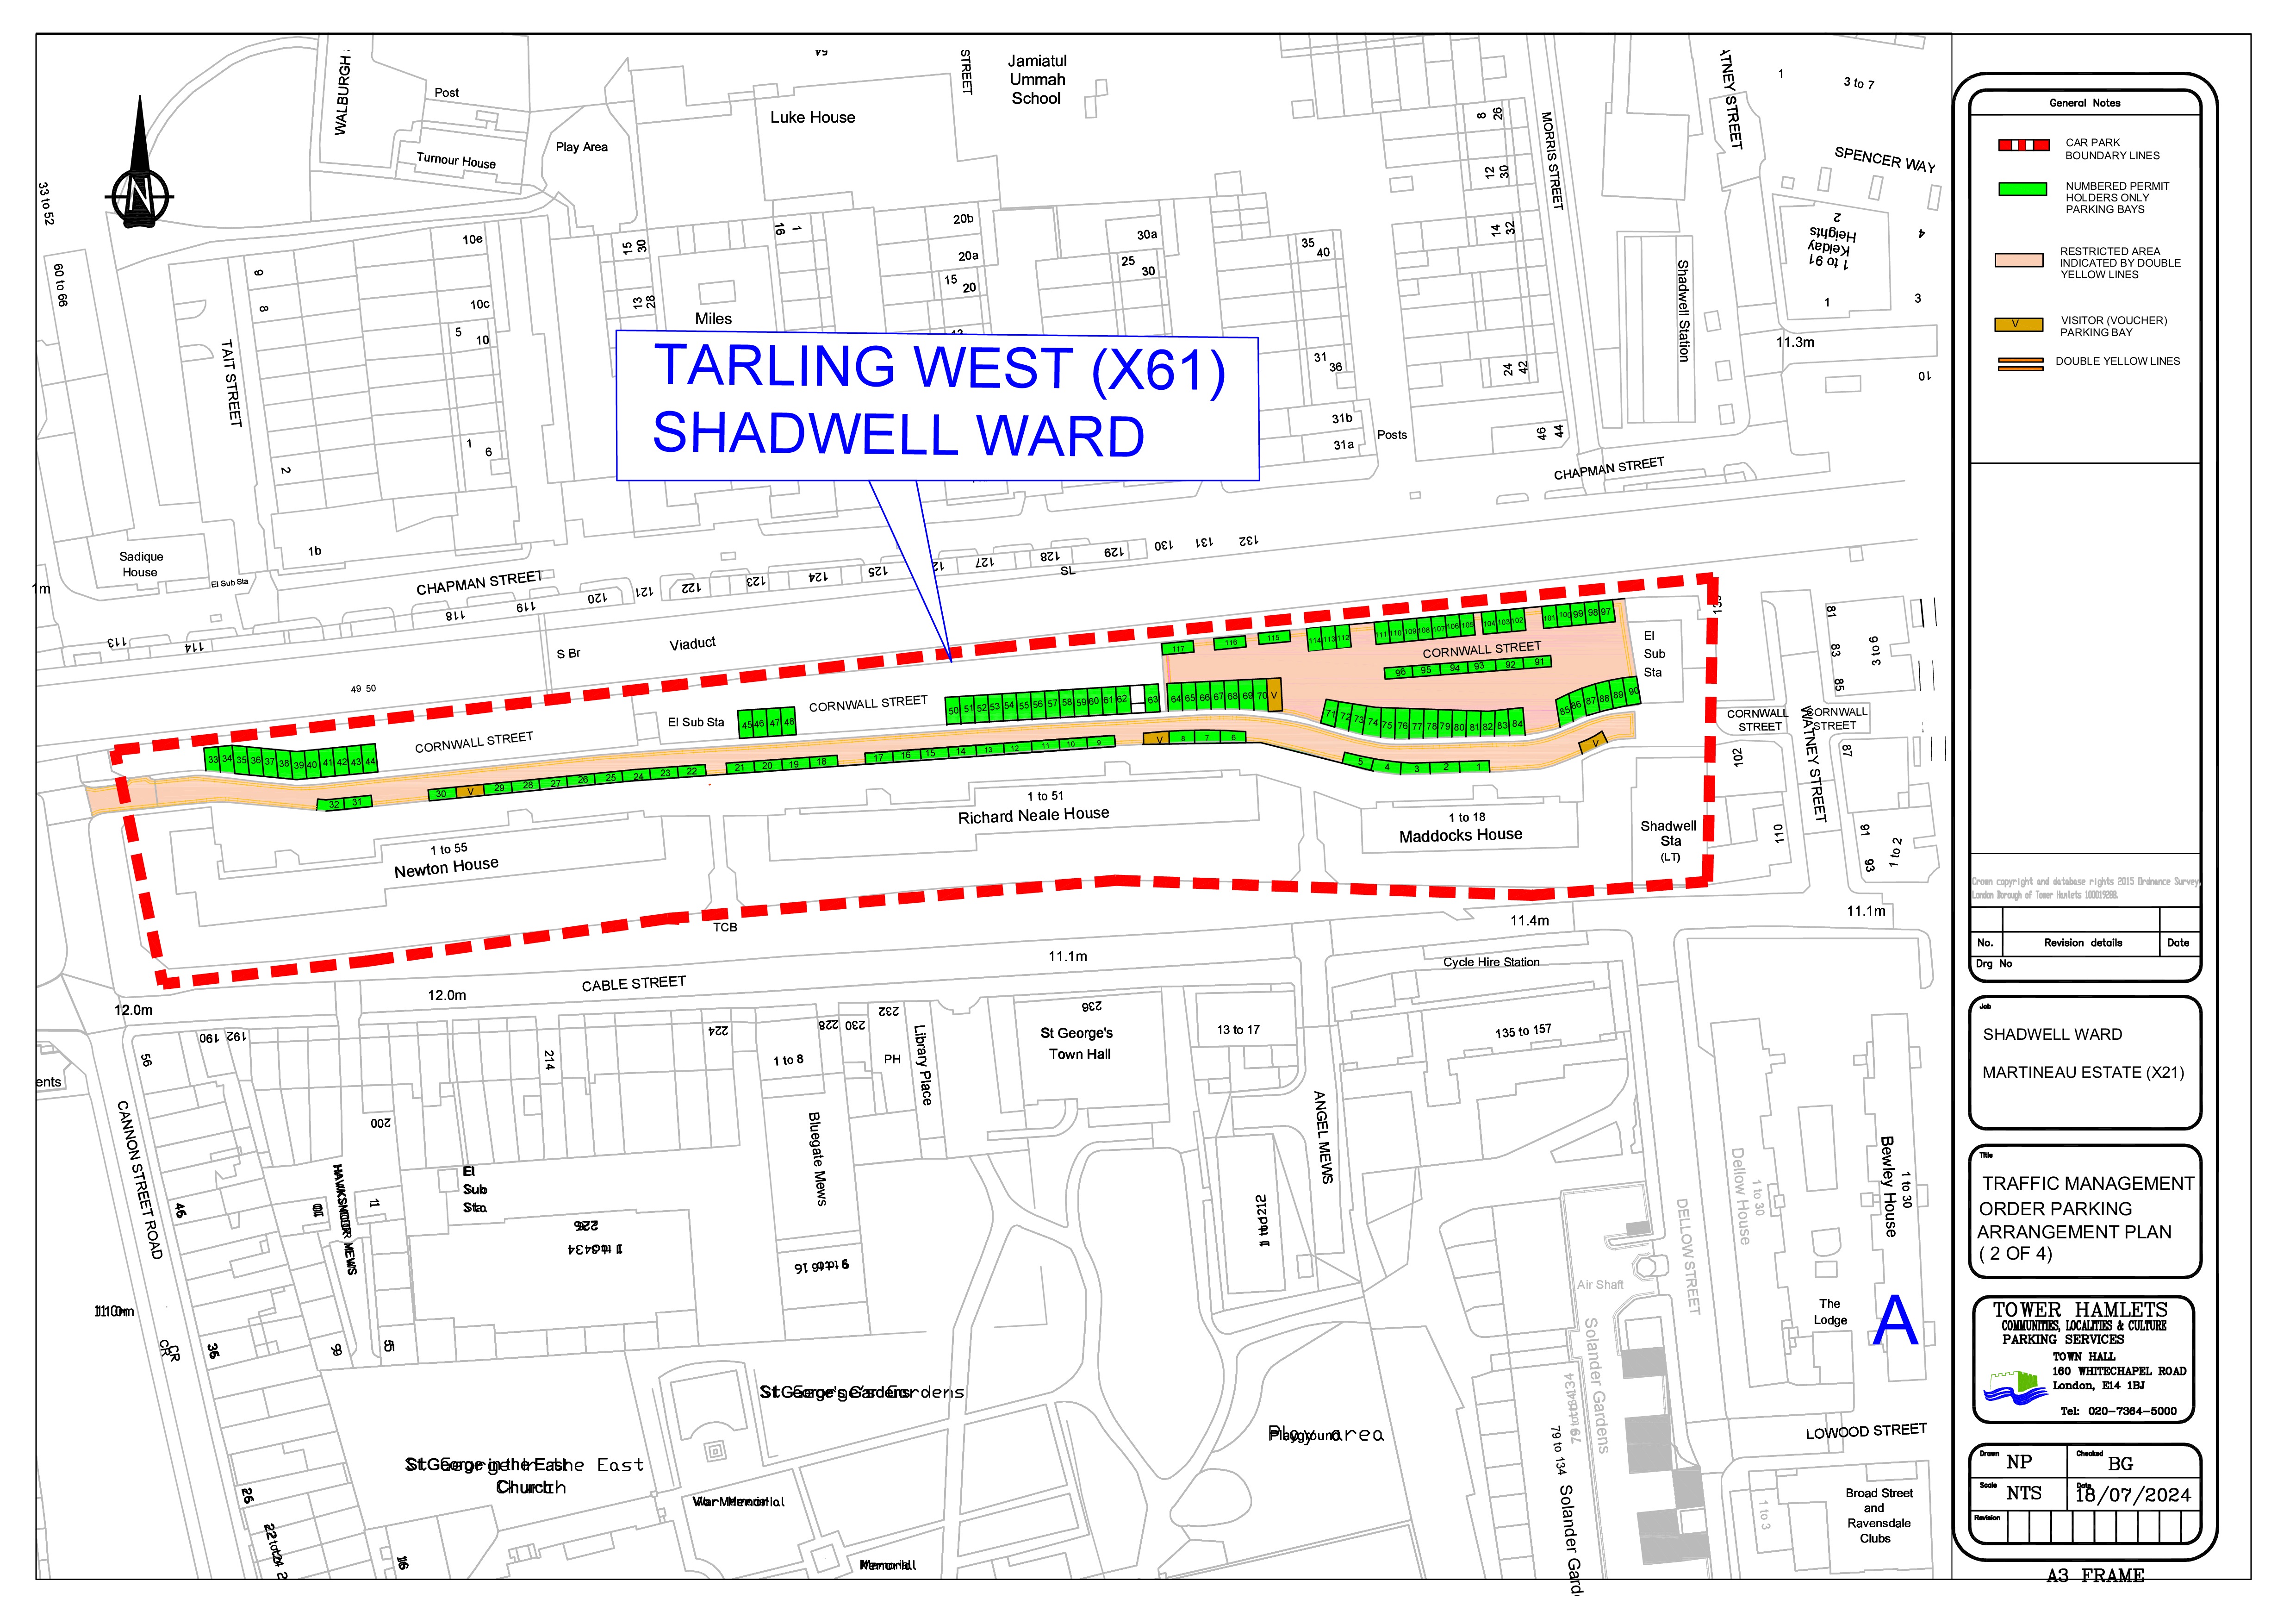 Tarling West Estate Proposed Parking arrangement plans